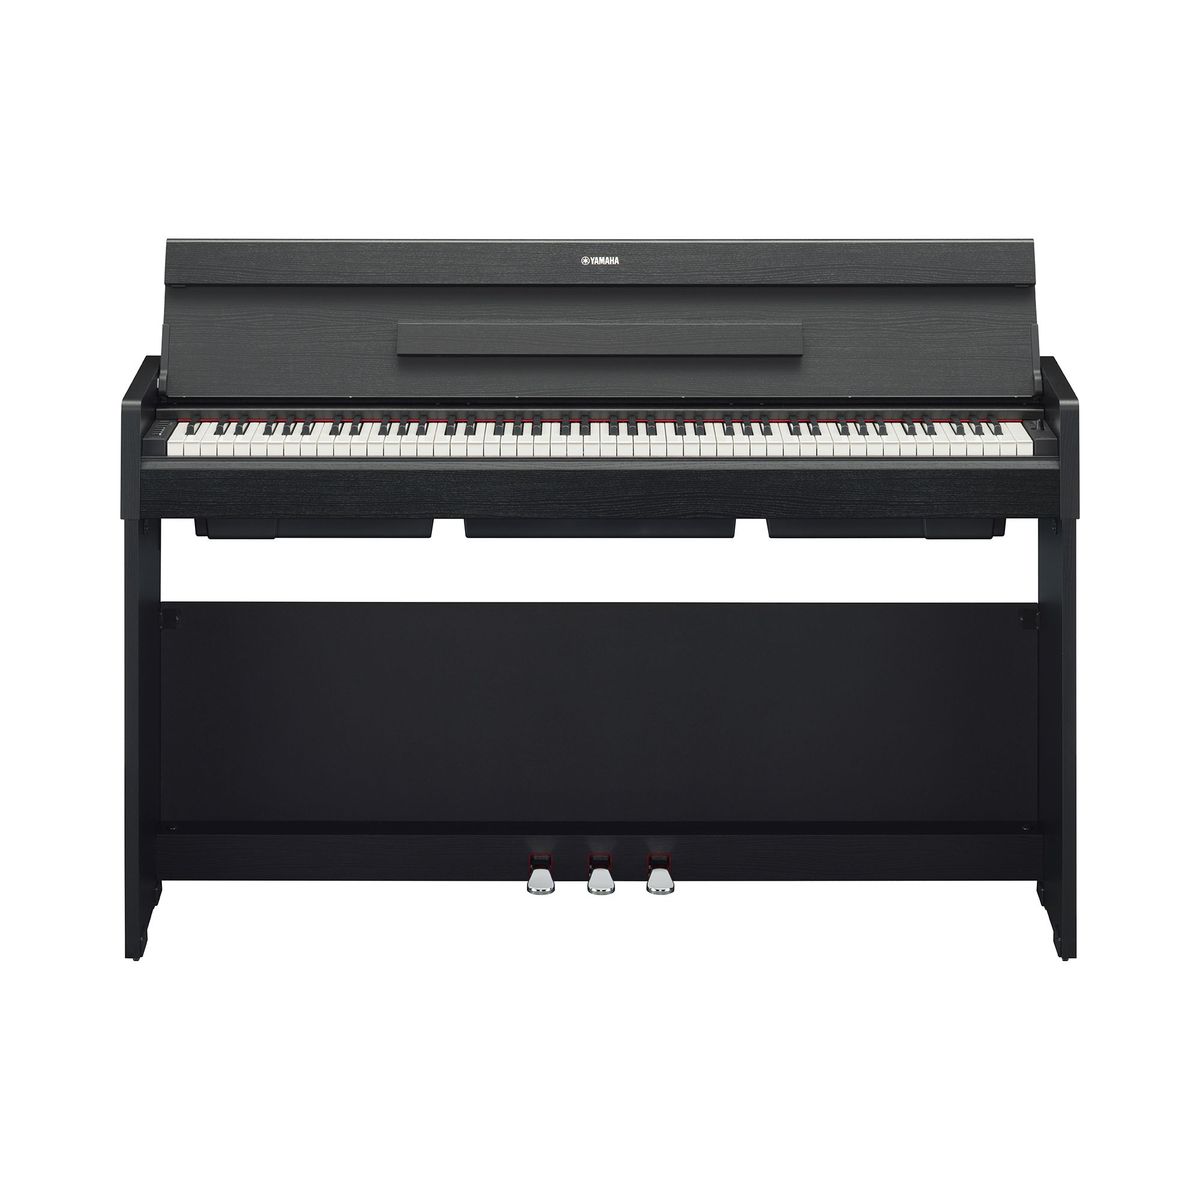 Цифровые пианино Yamaha YDP-S35B Arius 88 клавишная клавиатура с электронным пианино